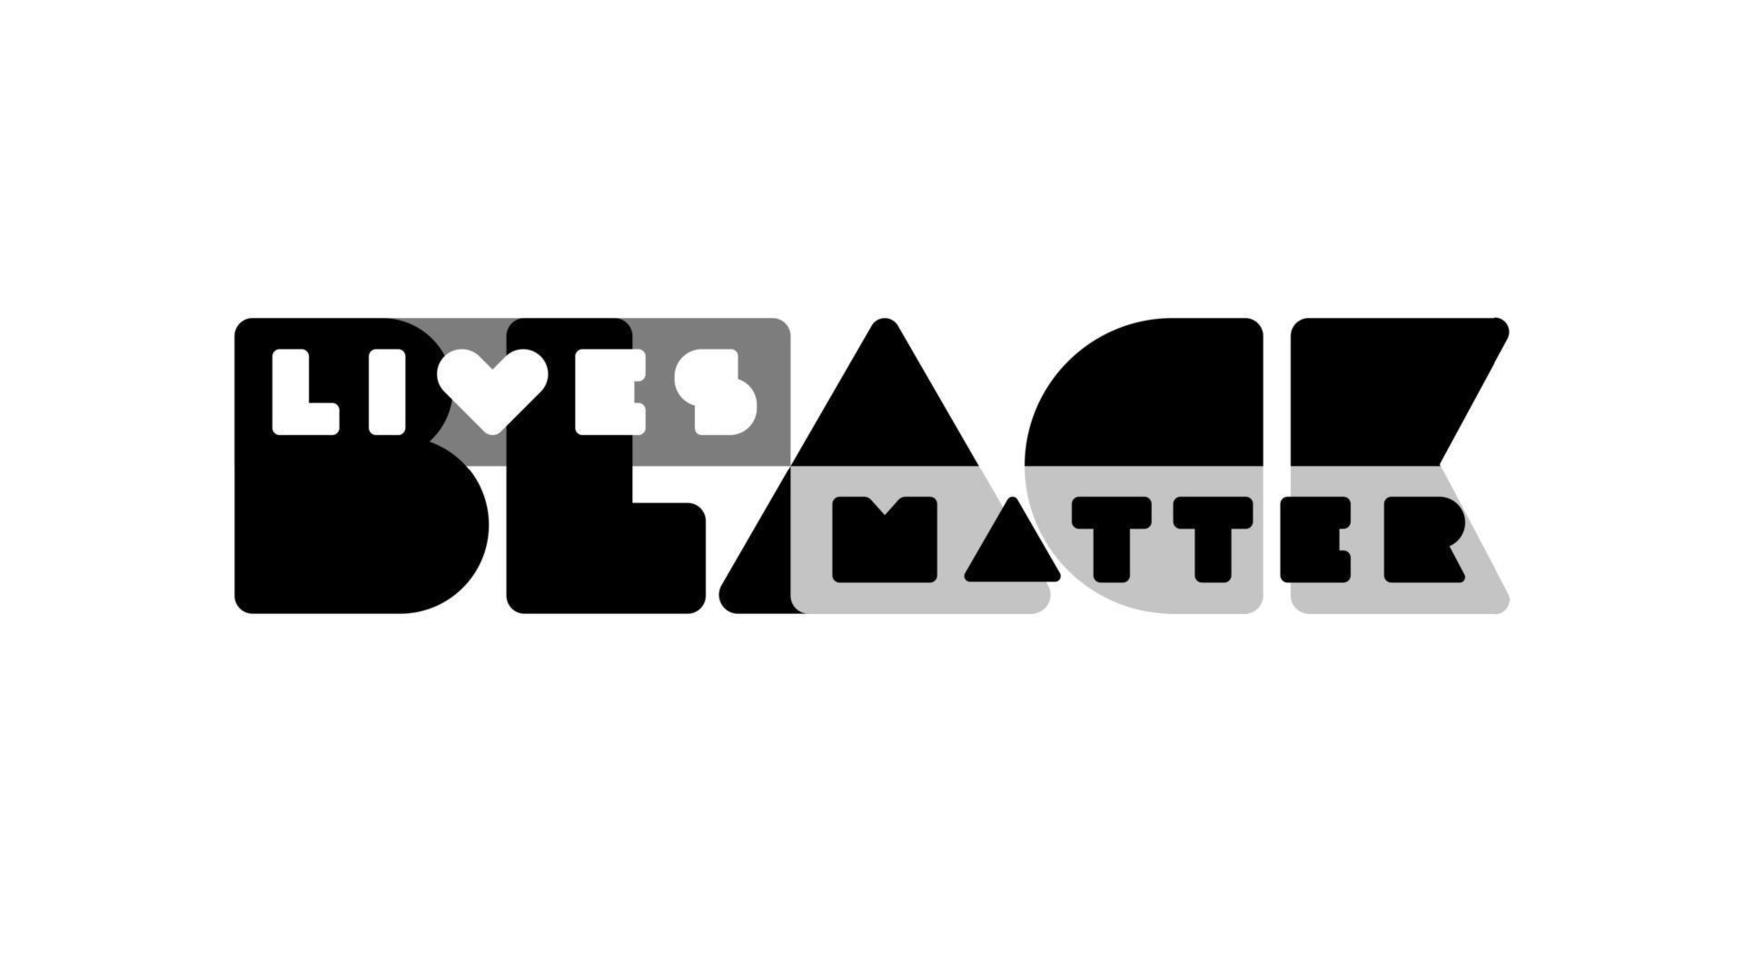 svartvit baner med minimalistisk typografi svart liv materia illustration för protest, samling eller medvetenhet kampanj mot ras- diskriminering av mörk hud Färg. vektor mall med text